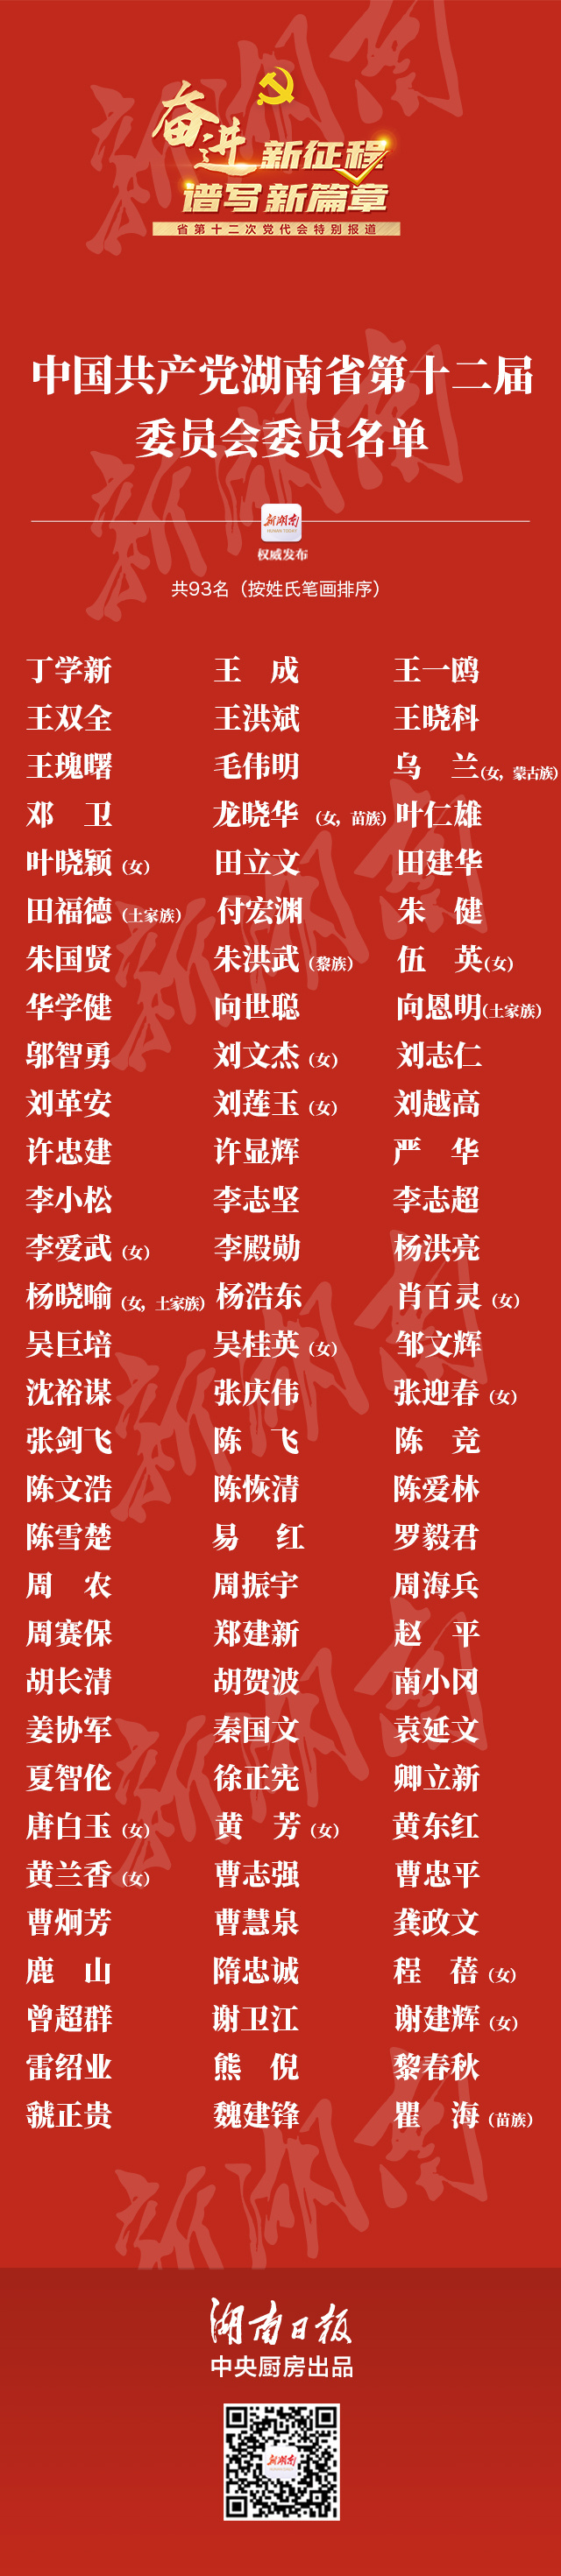 中国共产党湖南省第十二届委员会委员名单